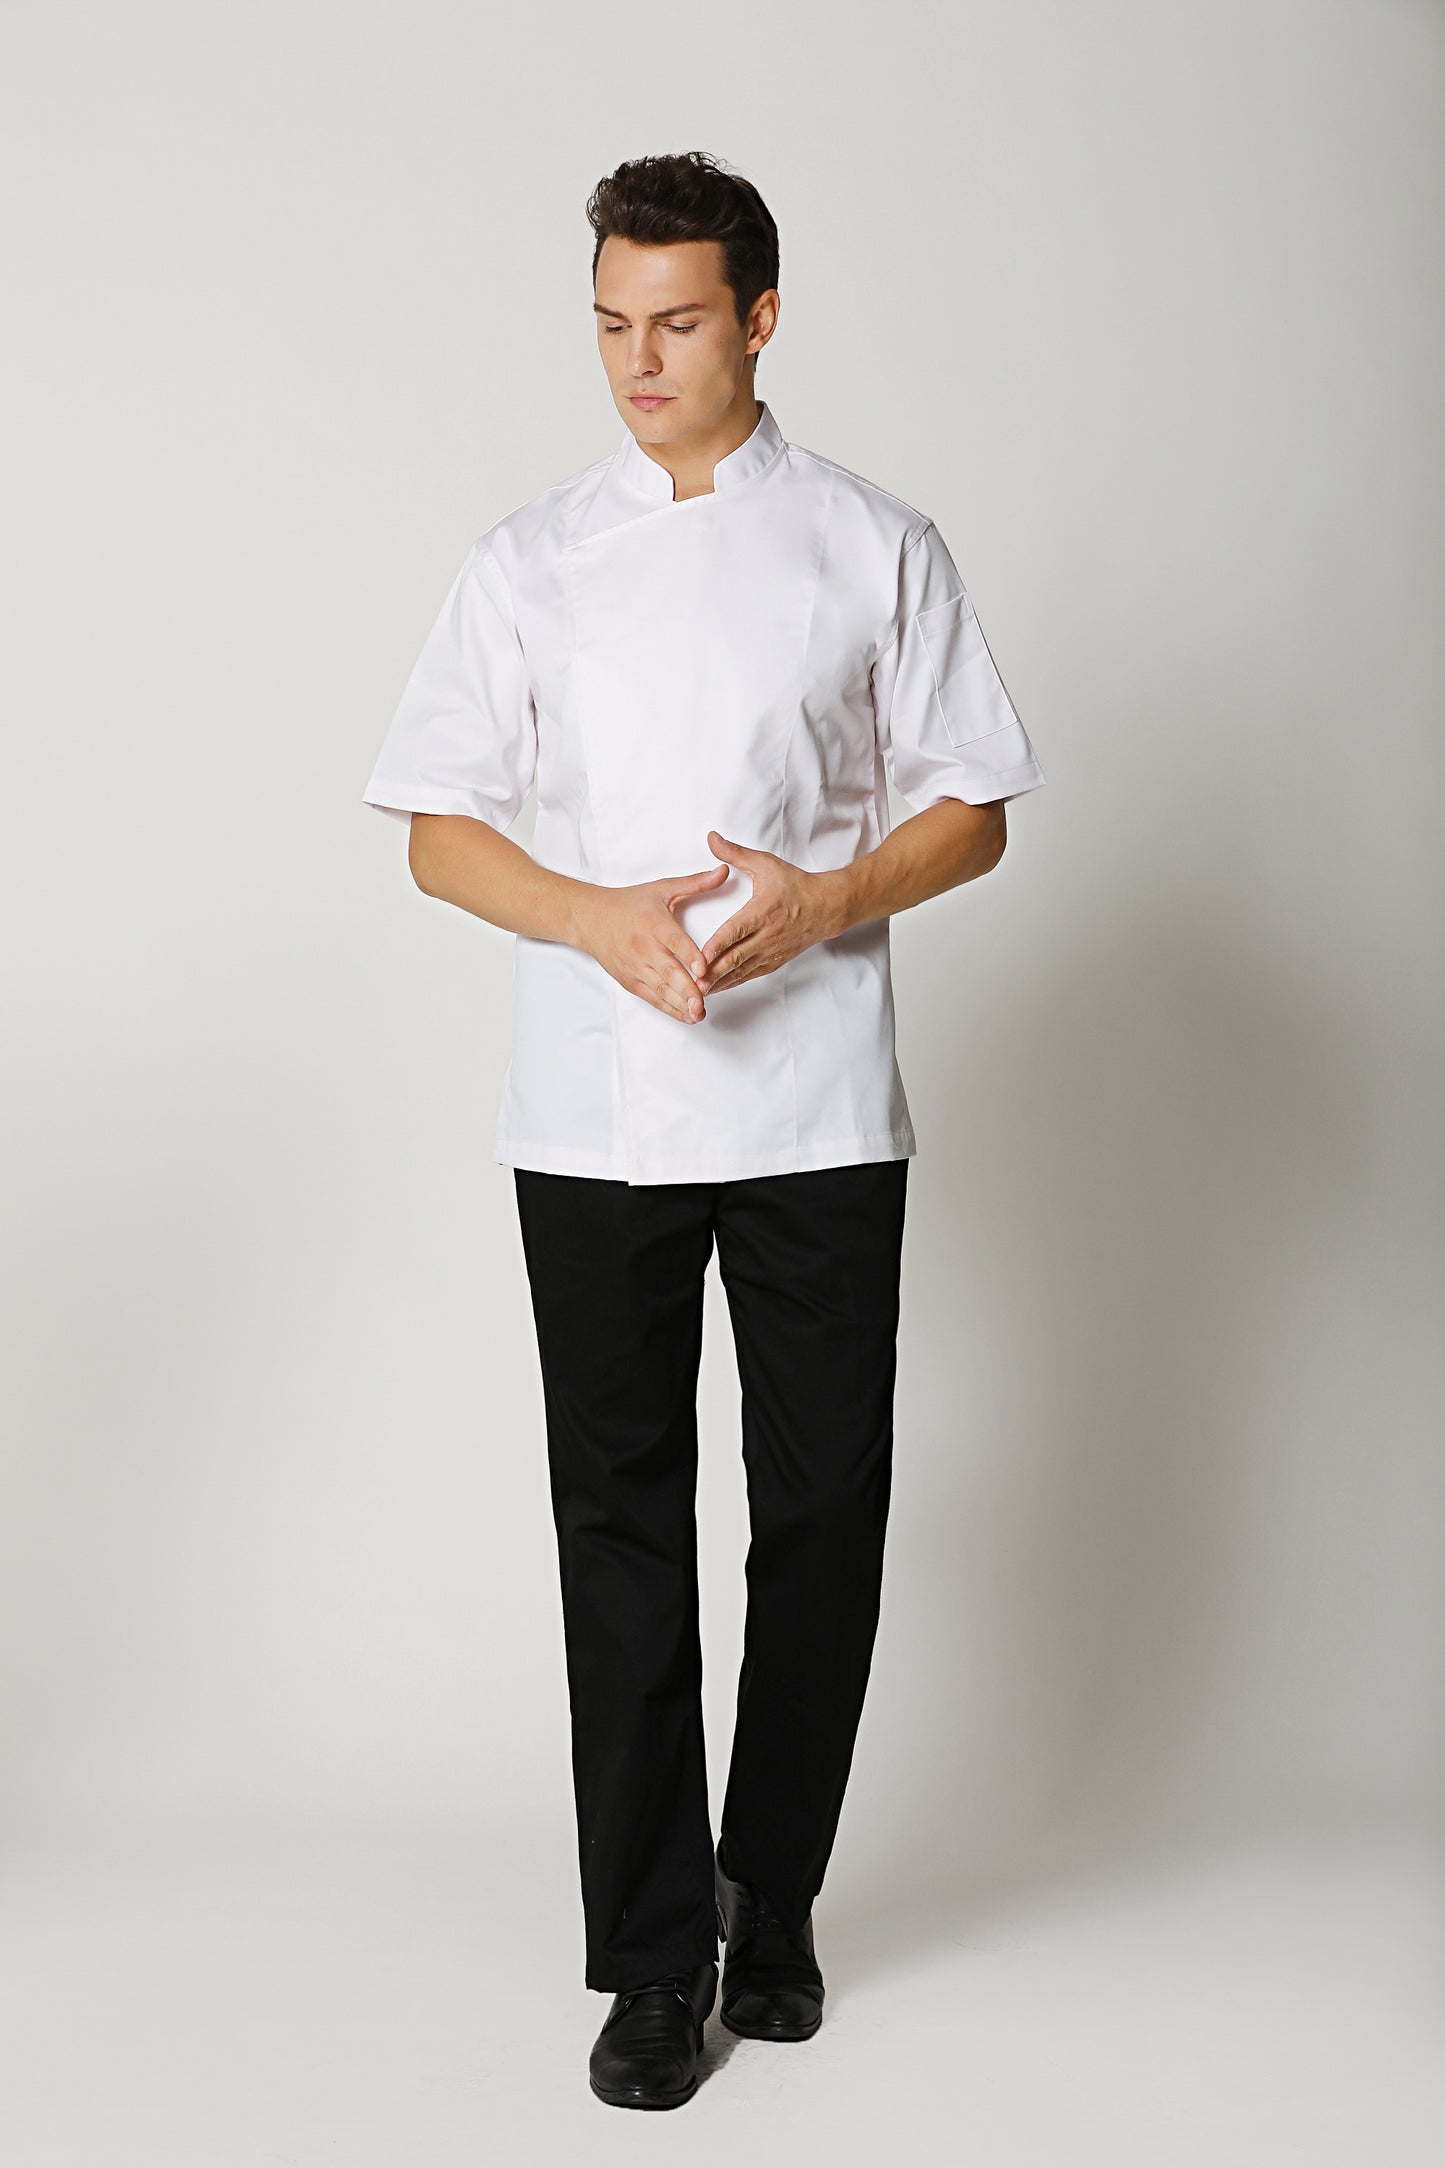 Banyan White Chef Jacket Short Sleeve